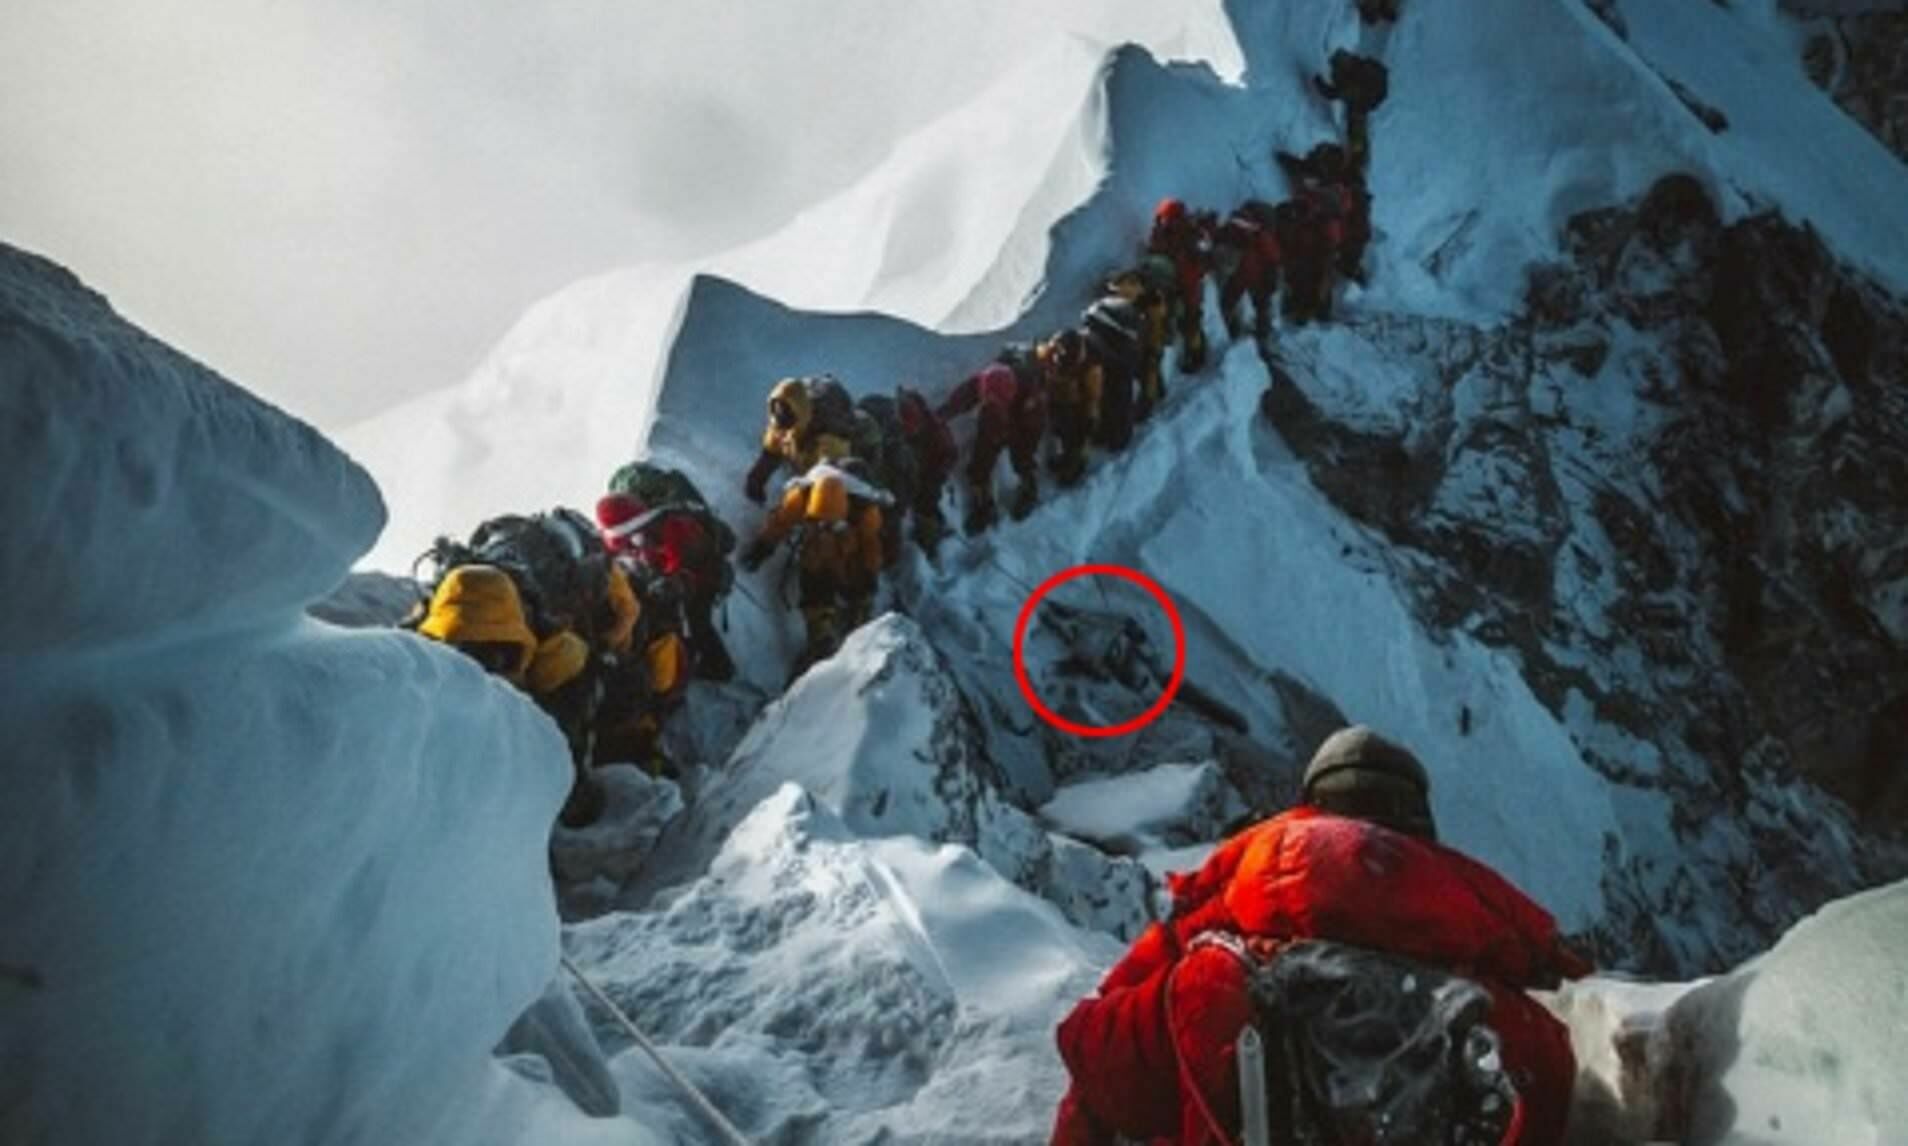 Очередь к вершине и тело одного из погибших альпинистов - утверждают, что труп лежит там, как ориентир, уже с 70-х годов, если не раньше